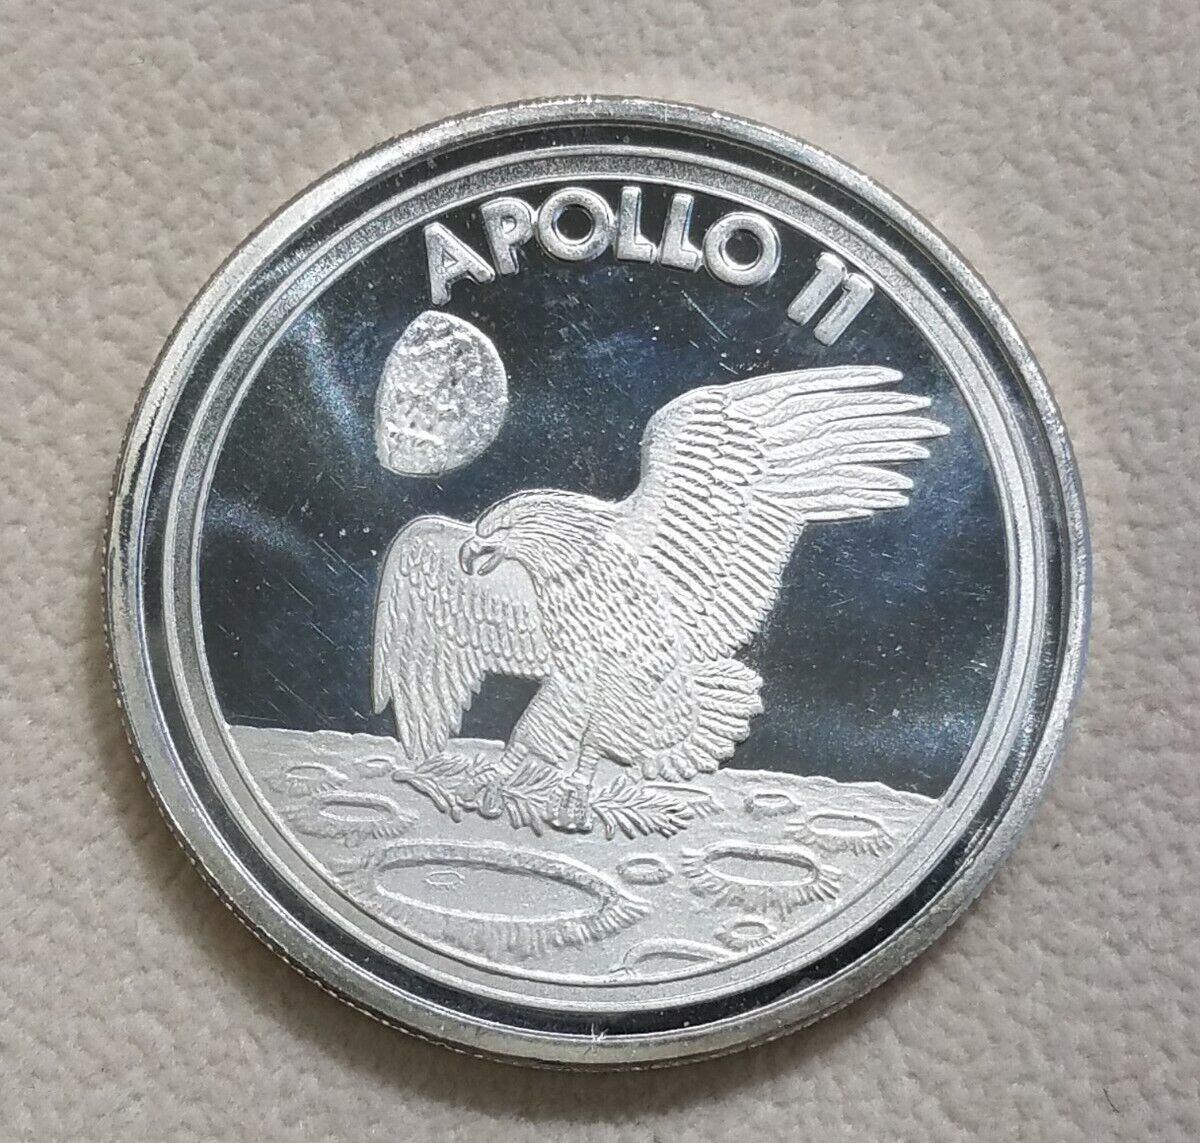 1 Troy Oz .999 Fine Silver Apollo 11 Proof Like Round NASA 50th Anniversary $1 